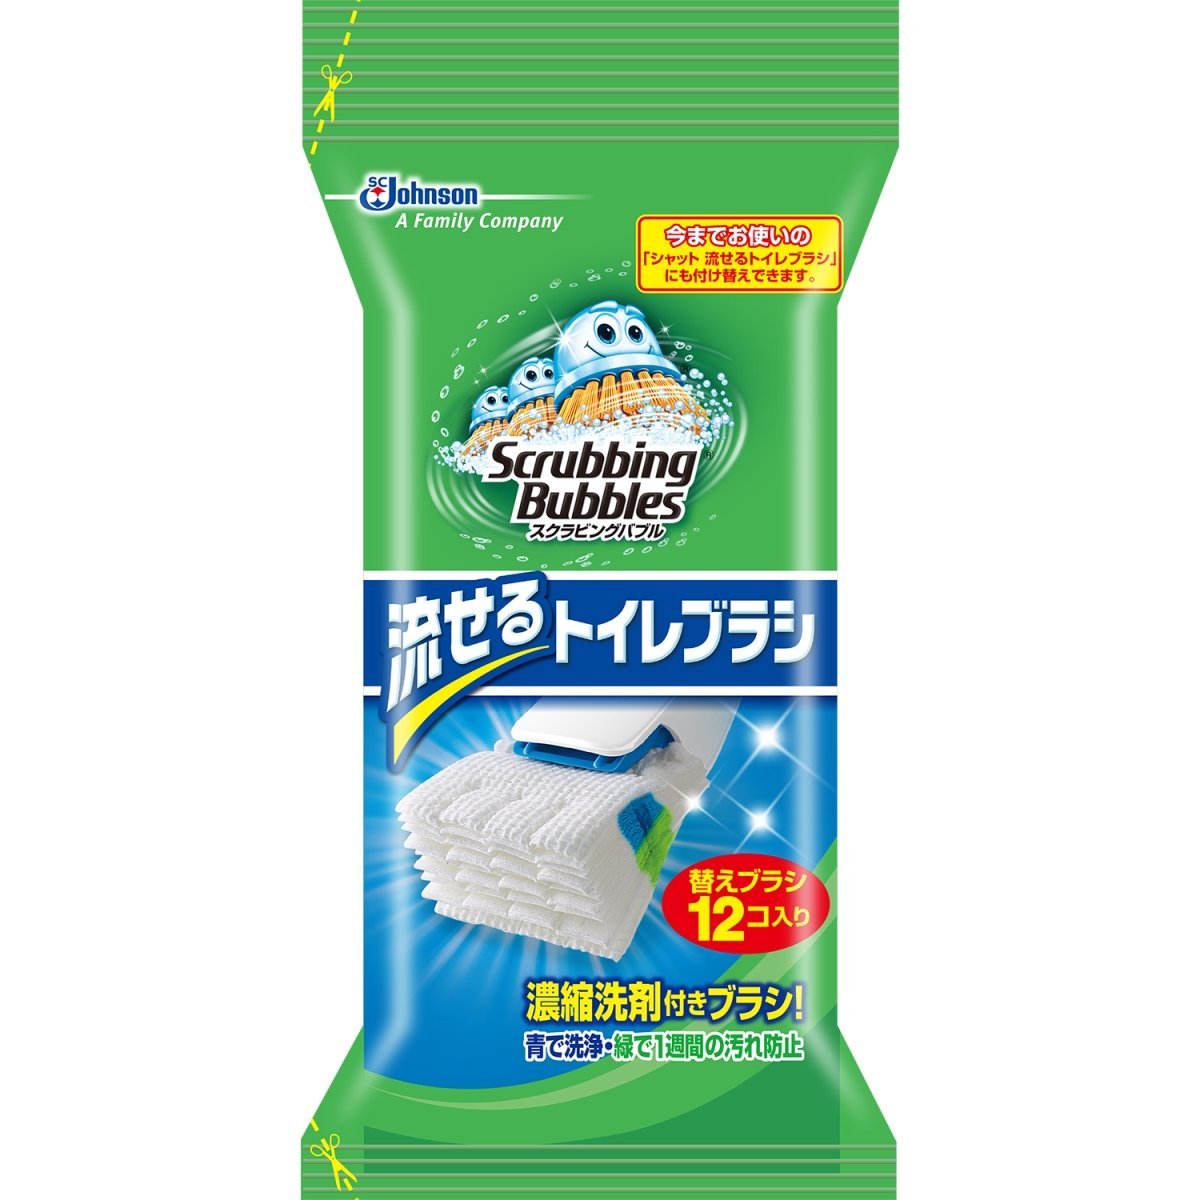 日本Johnson马桶/厕所专用清理刷 超速洁厕马桶刷12/24个替换刷头